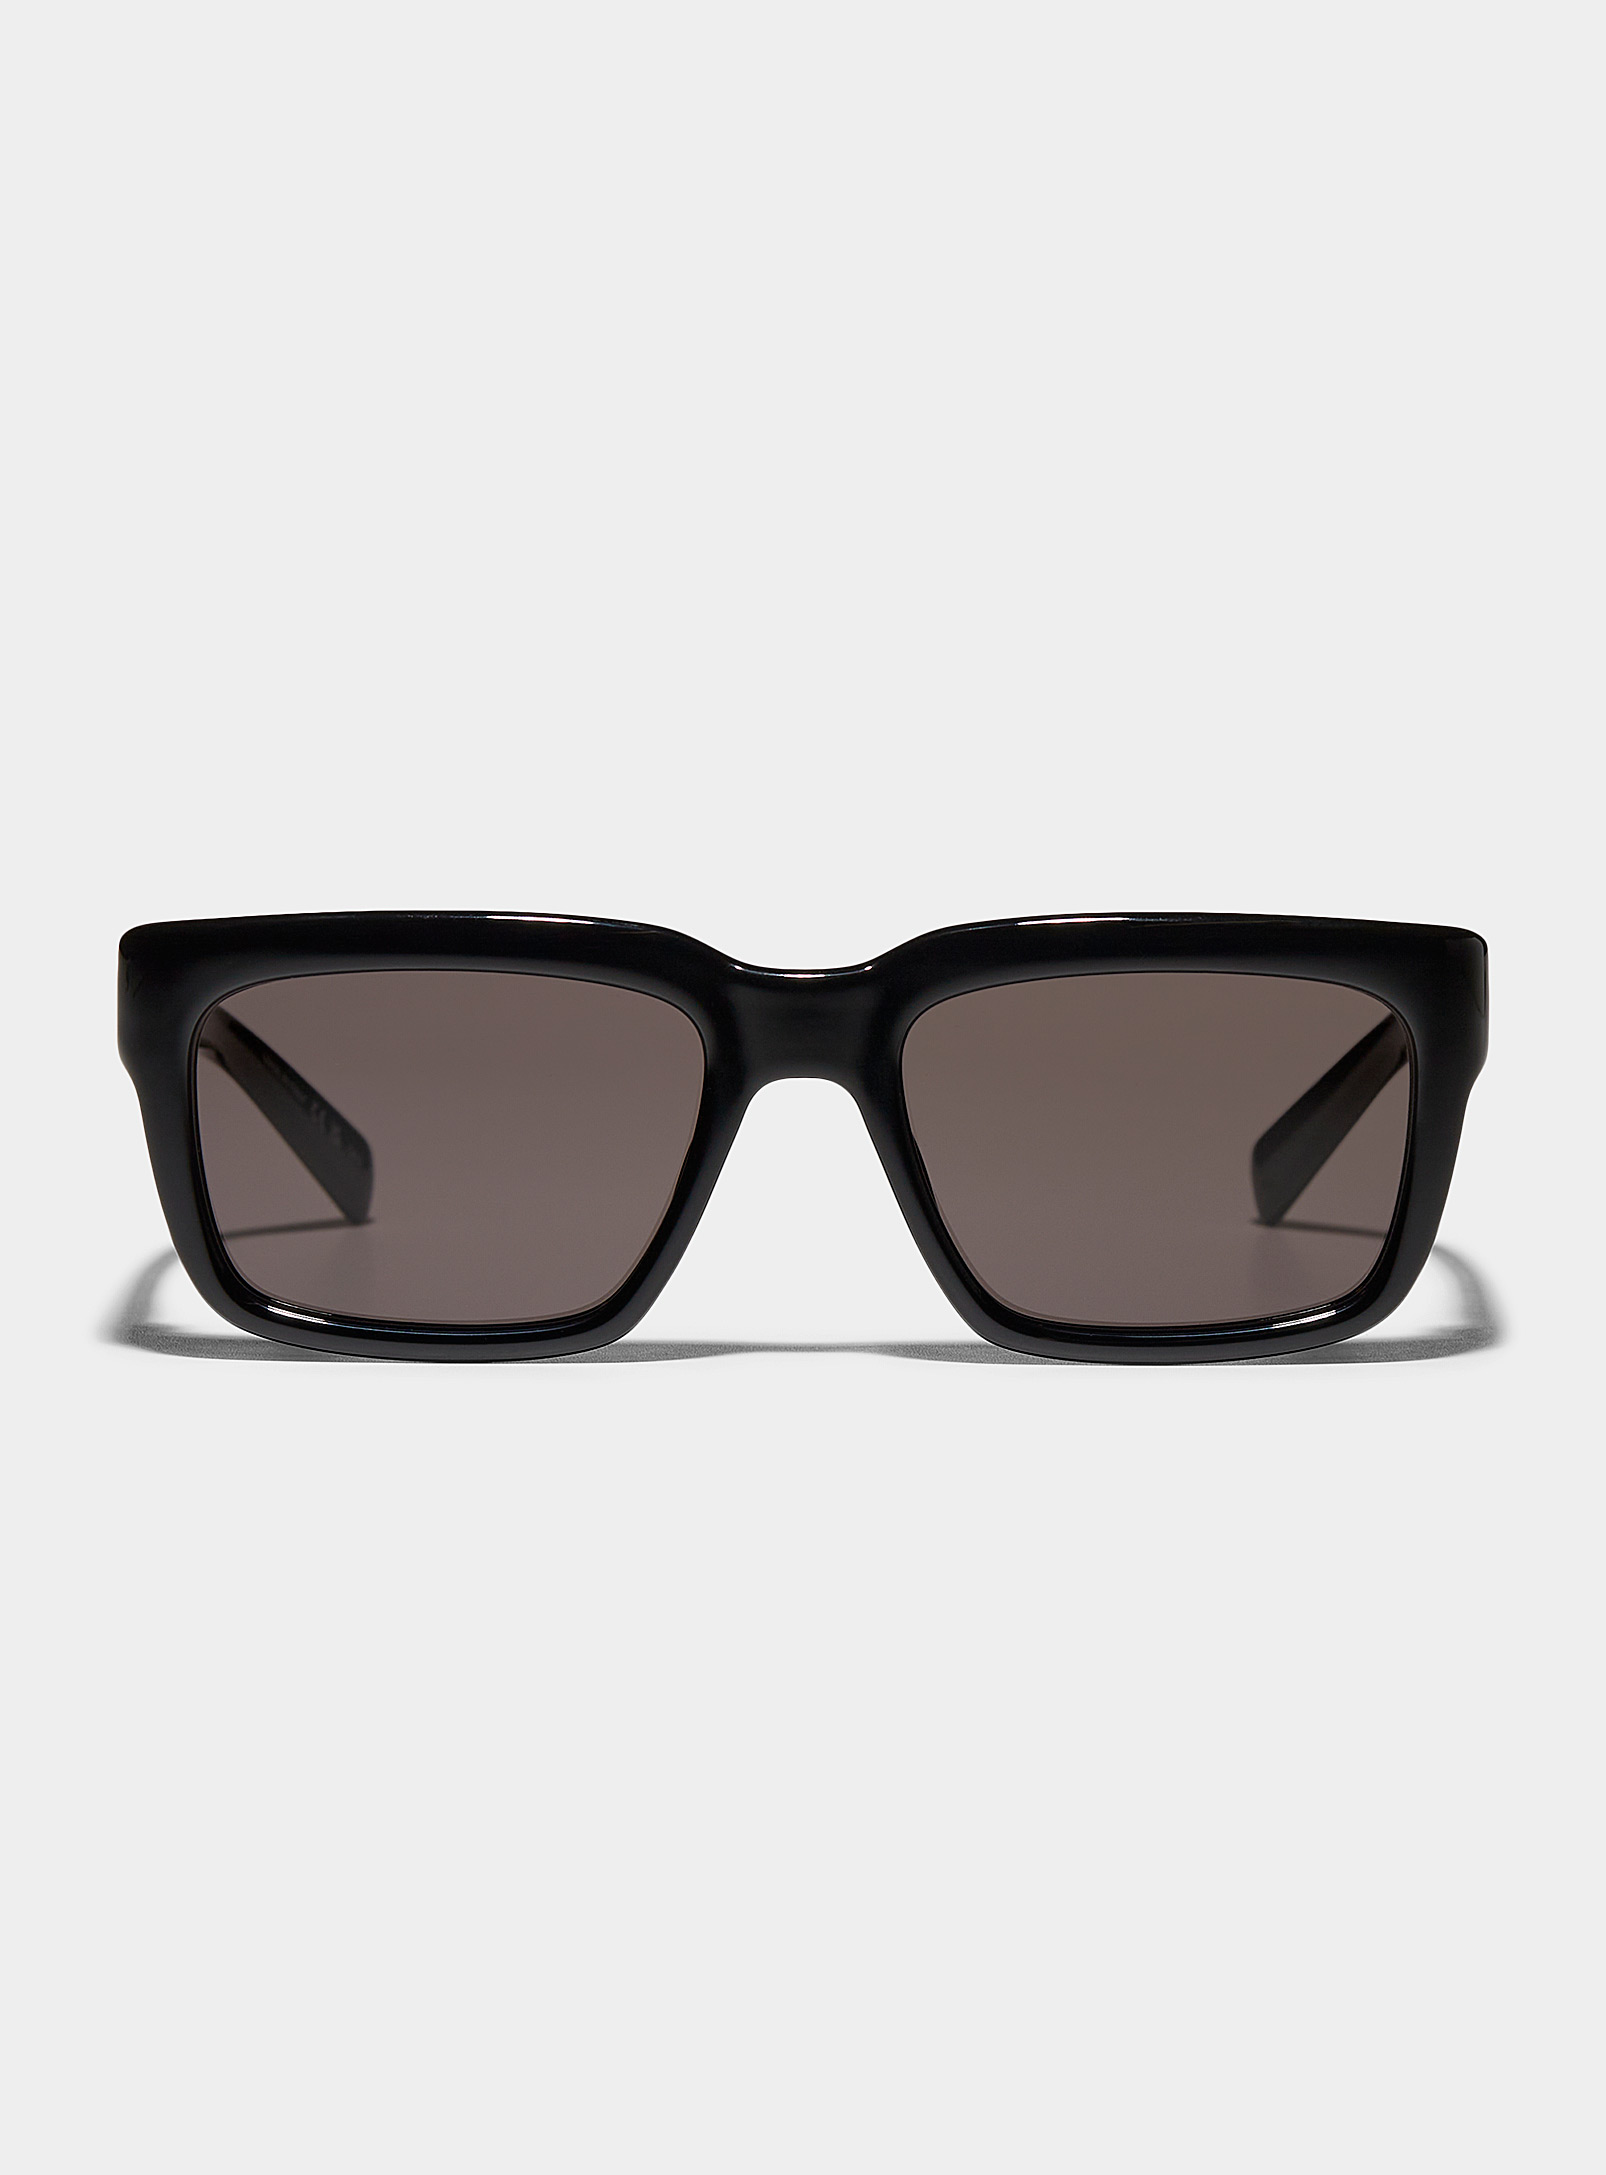 Saint Laurent - Les lunettes de soleil rectangulaires noires lustrées